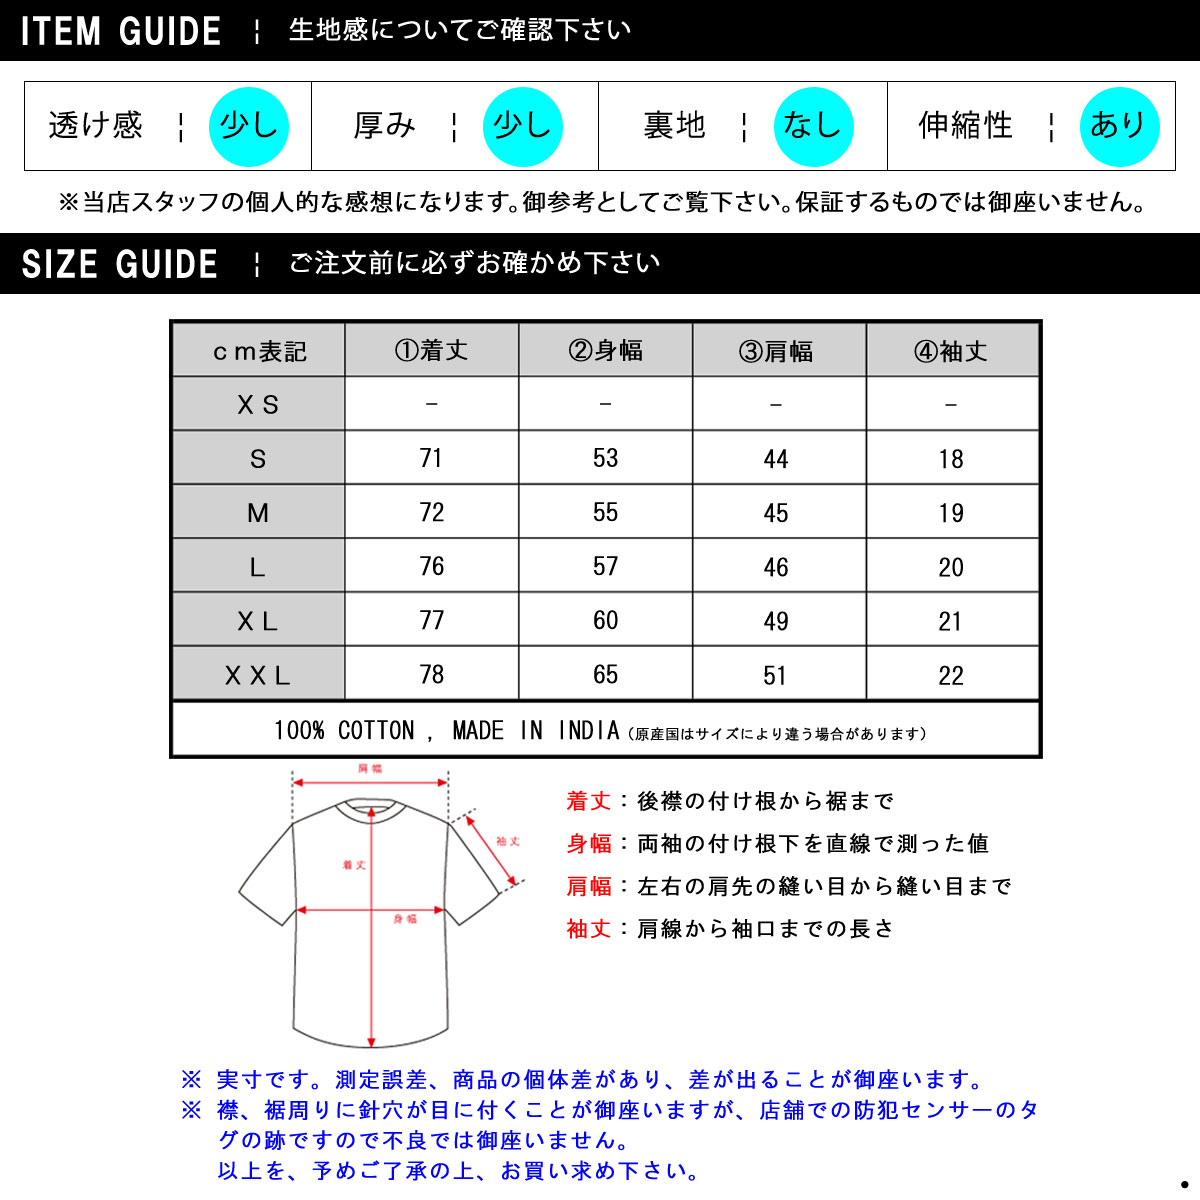 ralph lauren t shirt size guide - 54 